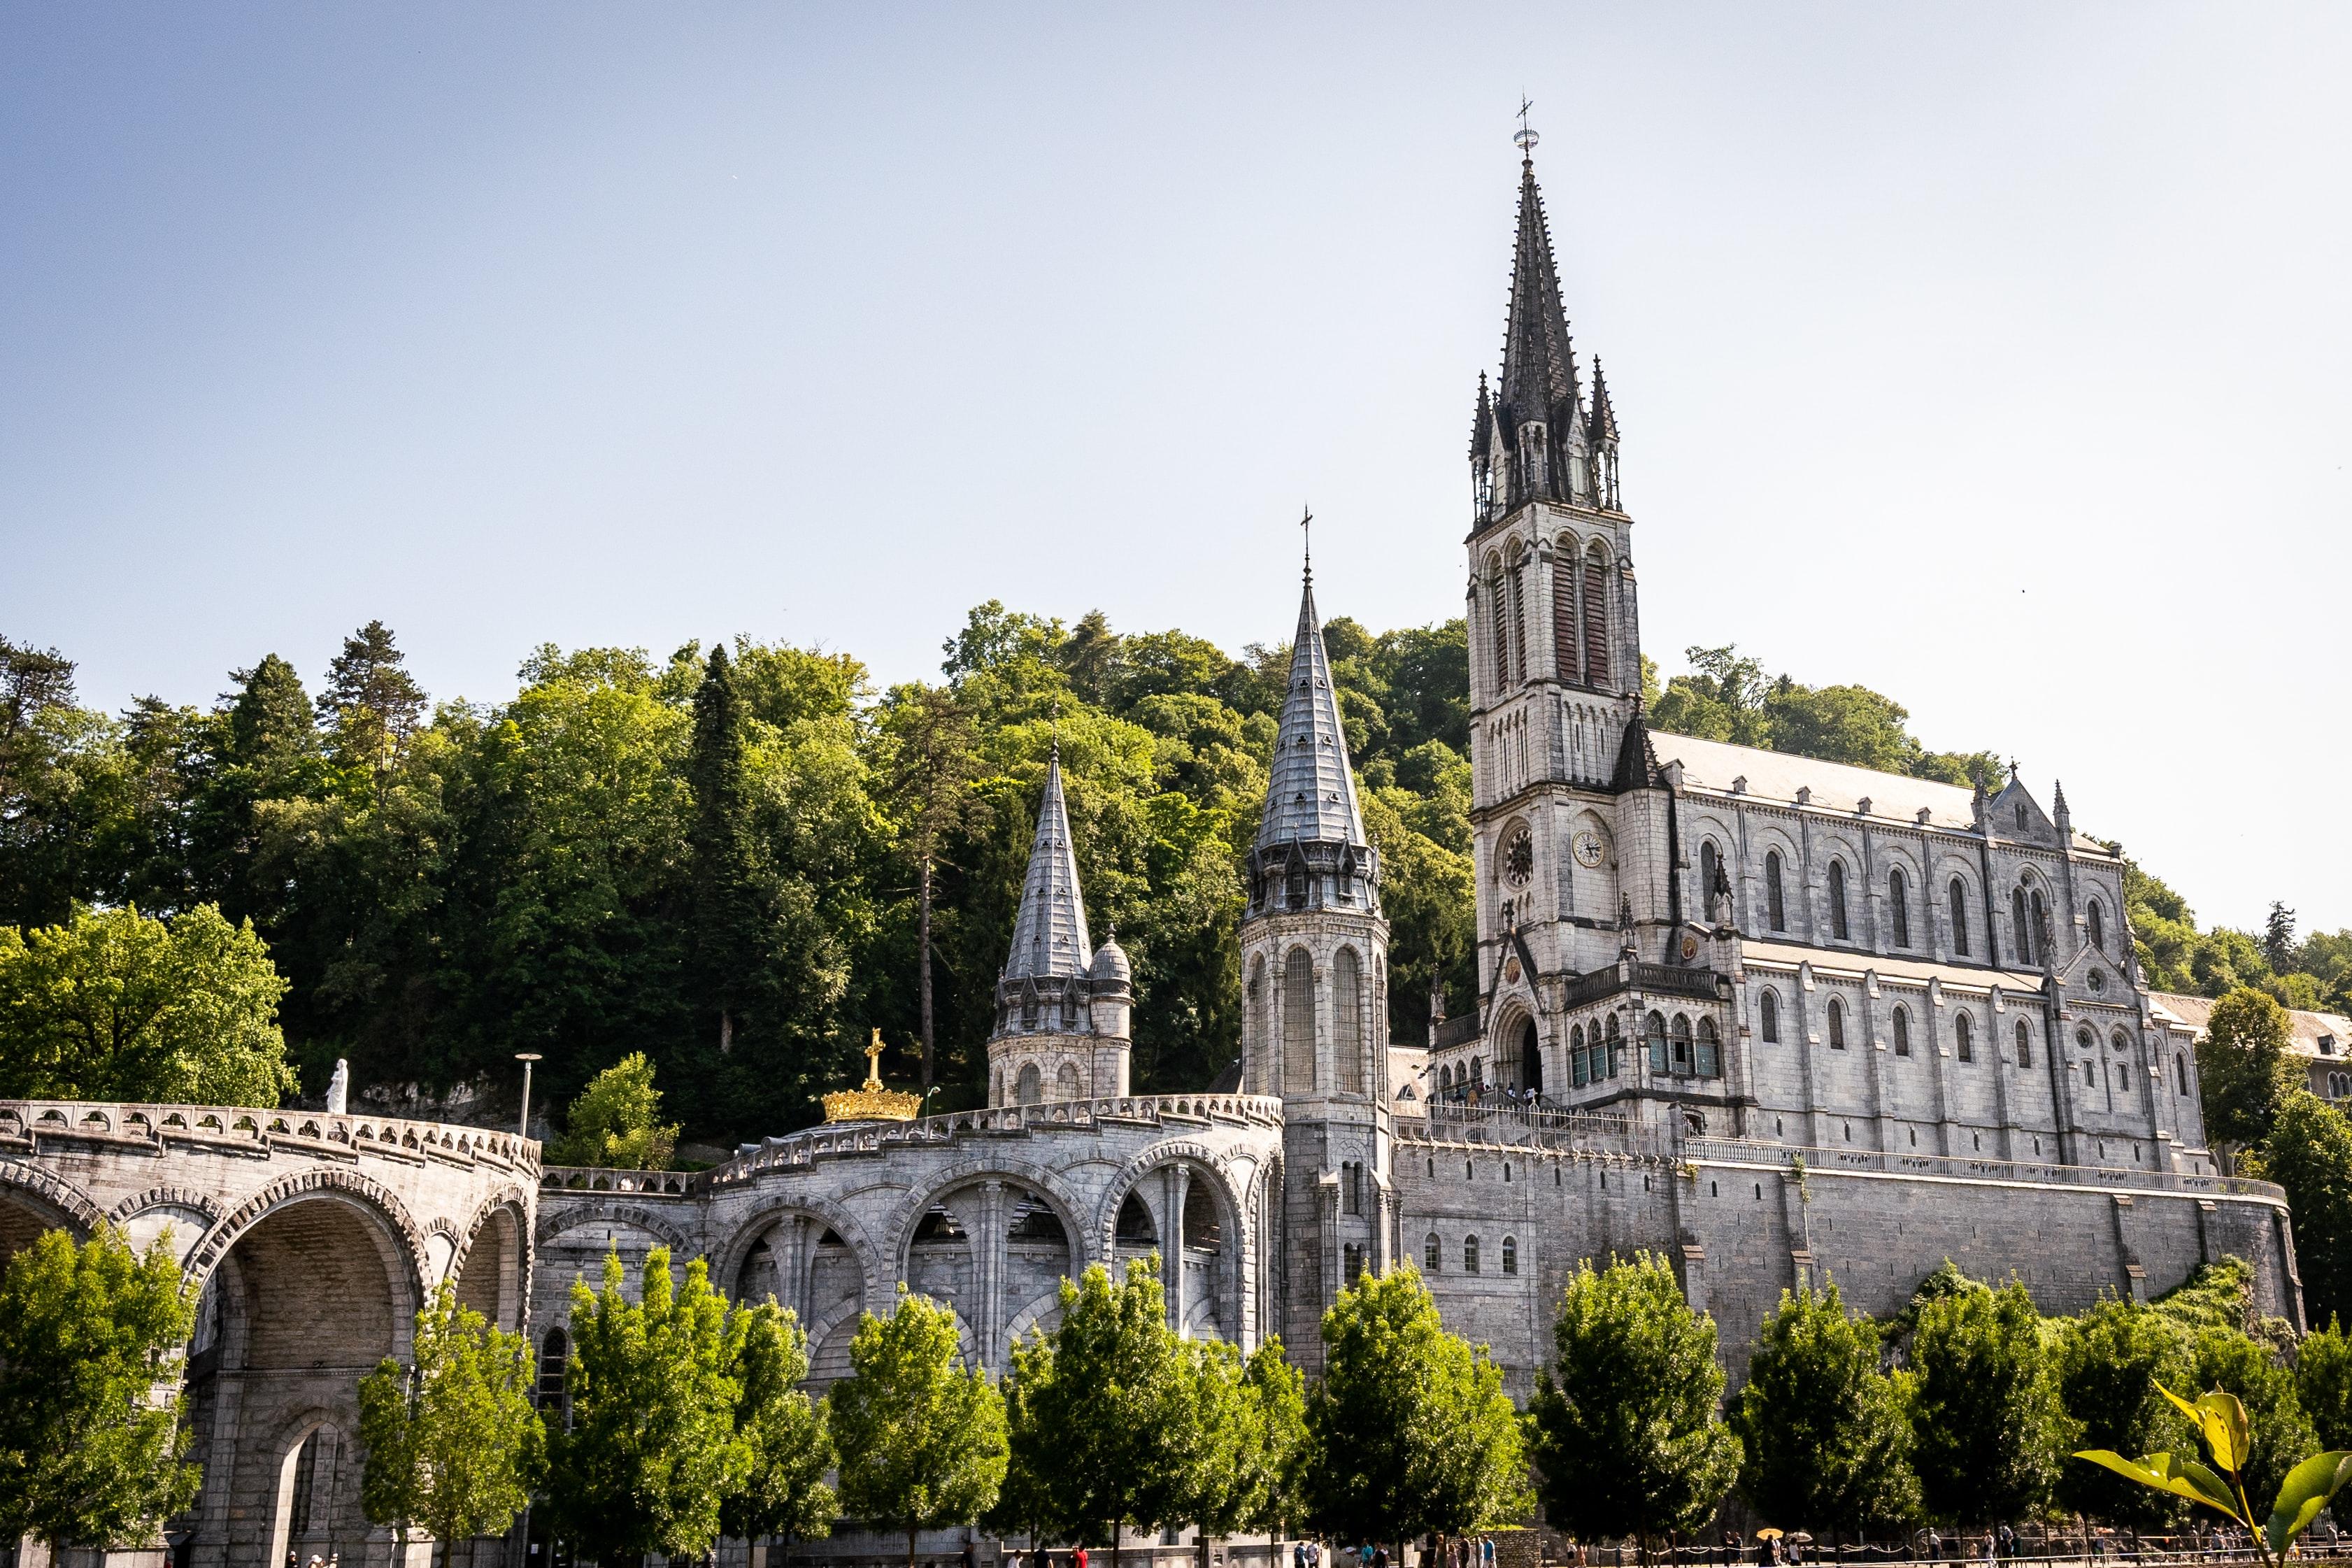 Ufficio del Turismo di Lourdes